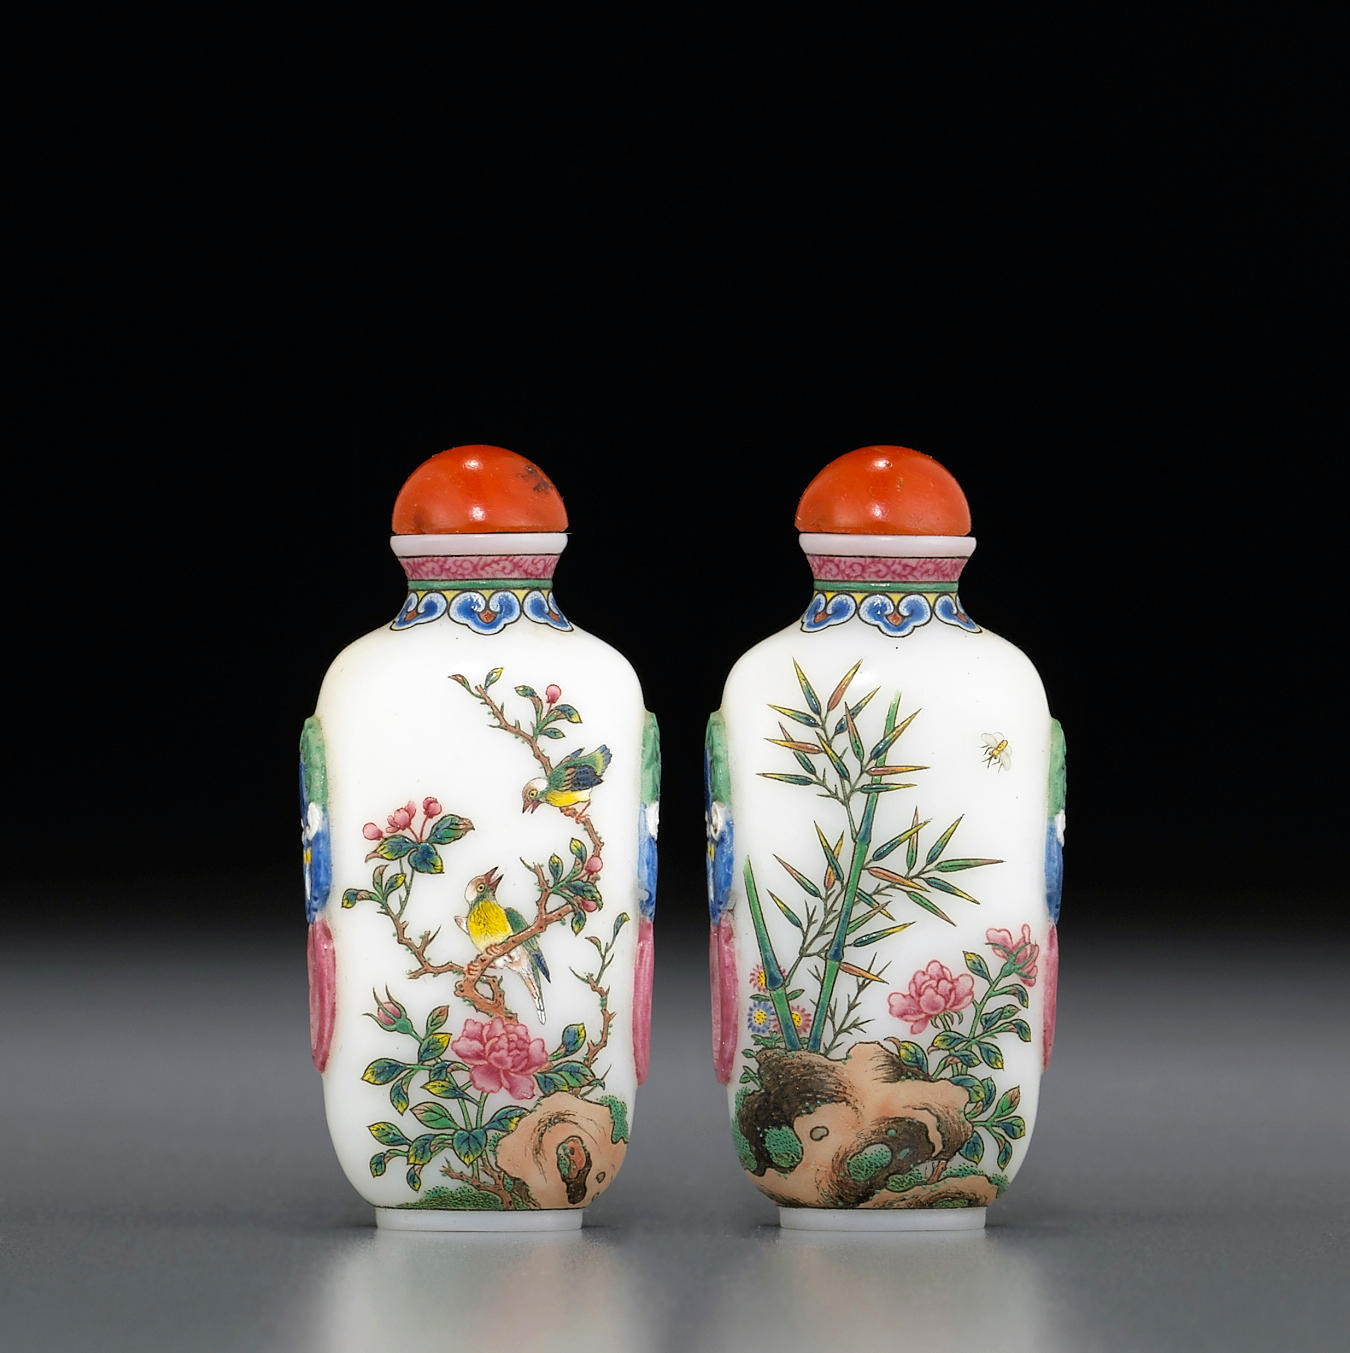 內繪 鼻煙壺 「天倫之樂」 中國傳統文化 無形文化遺産 - 通販